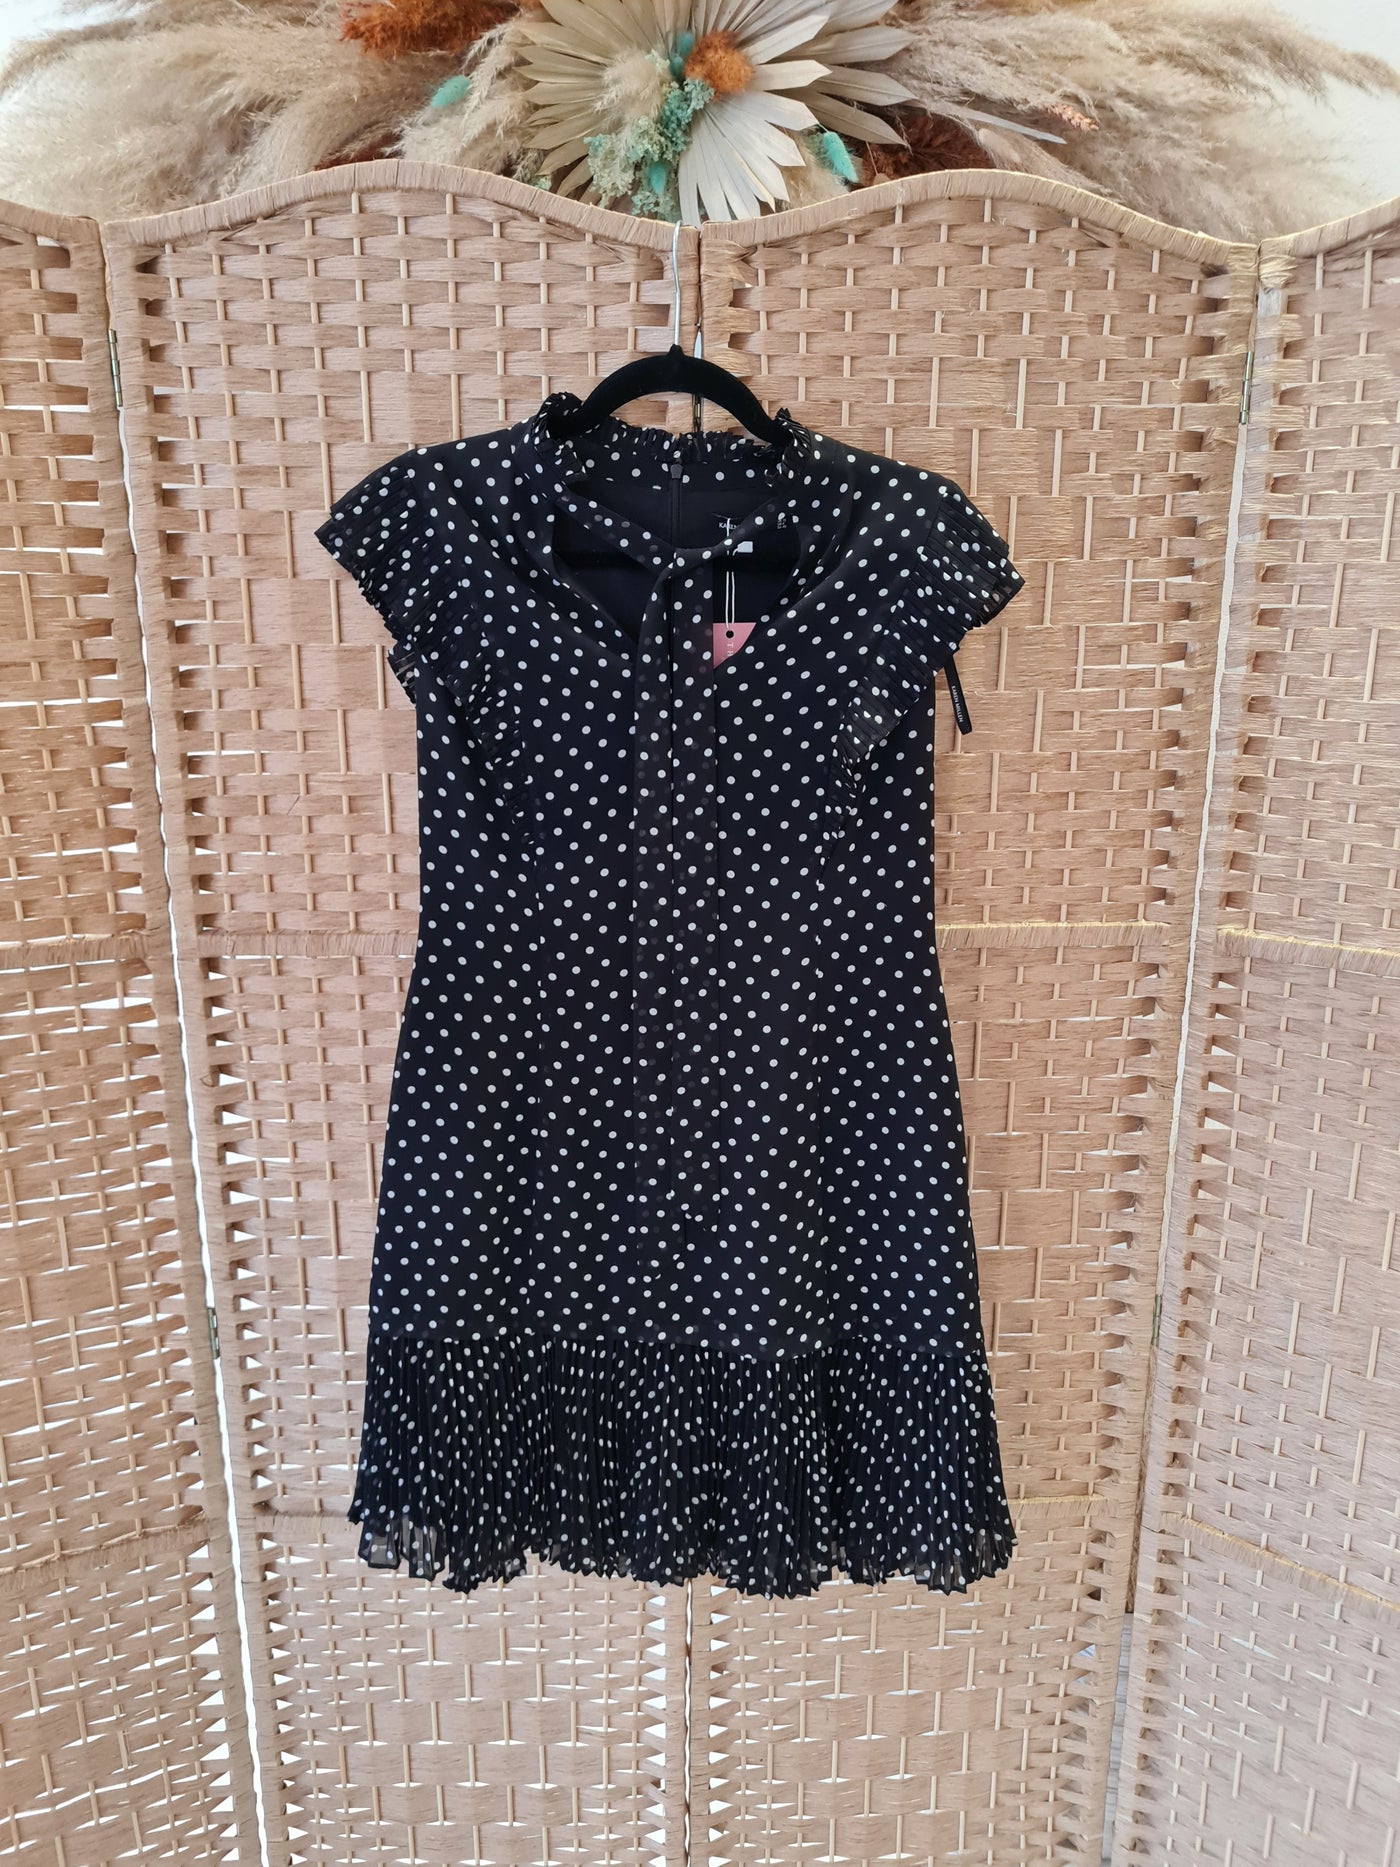 Karen Millen Black Spot Dress Size 12